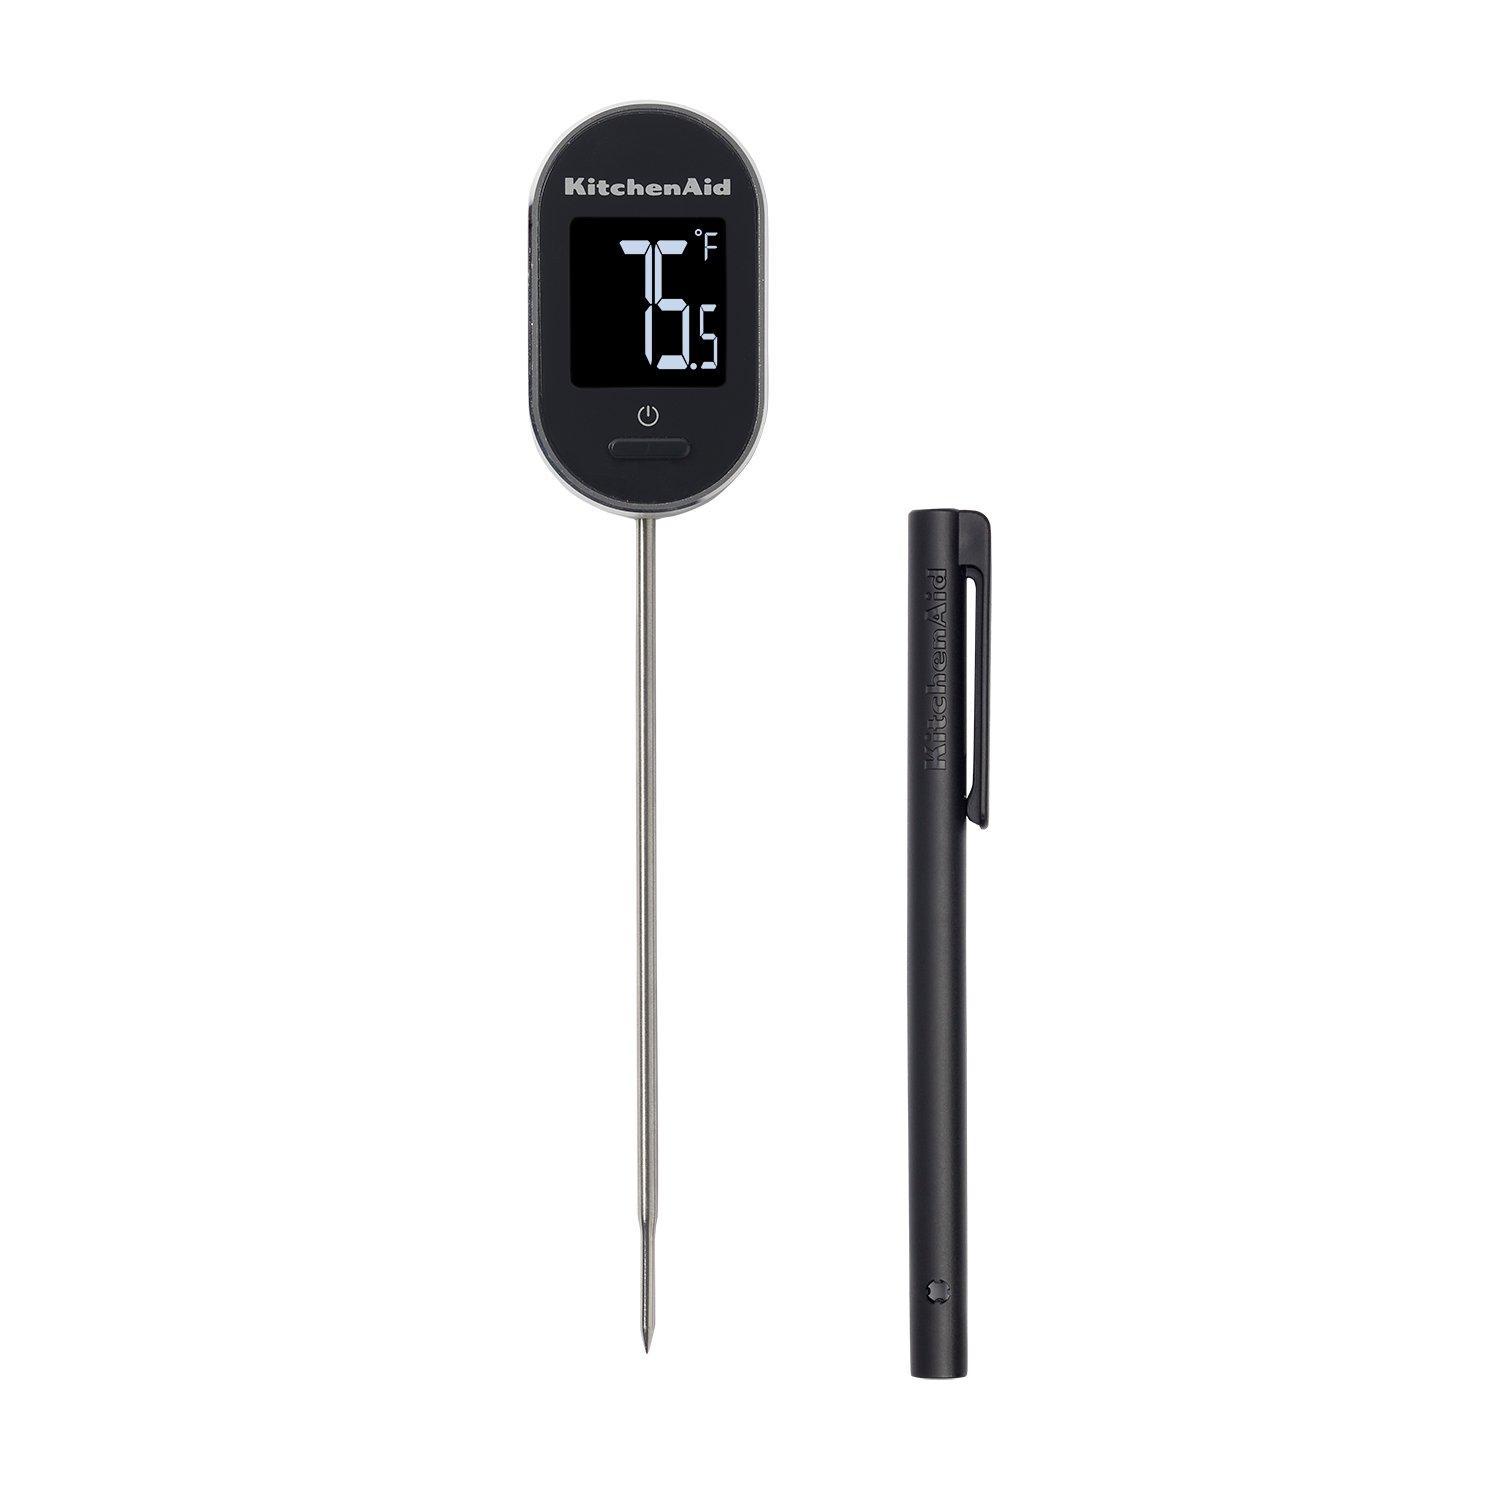 Kitchenaid Pivot Digital Thermometer|